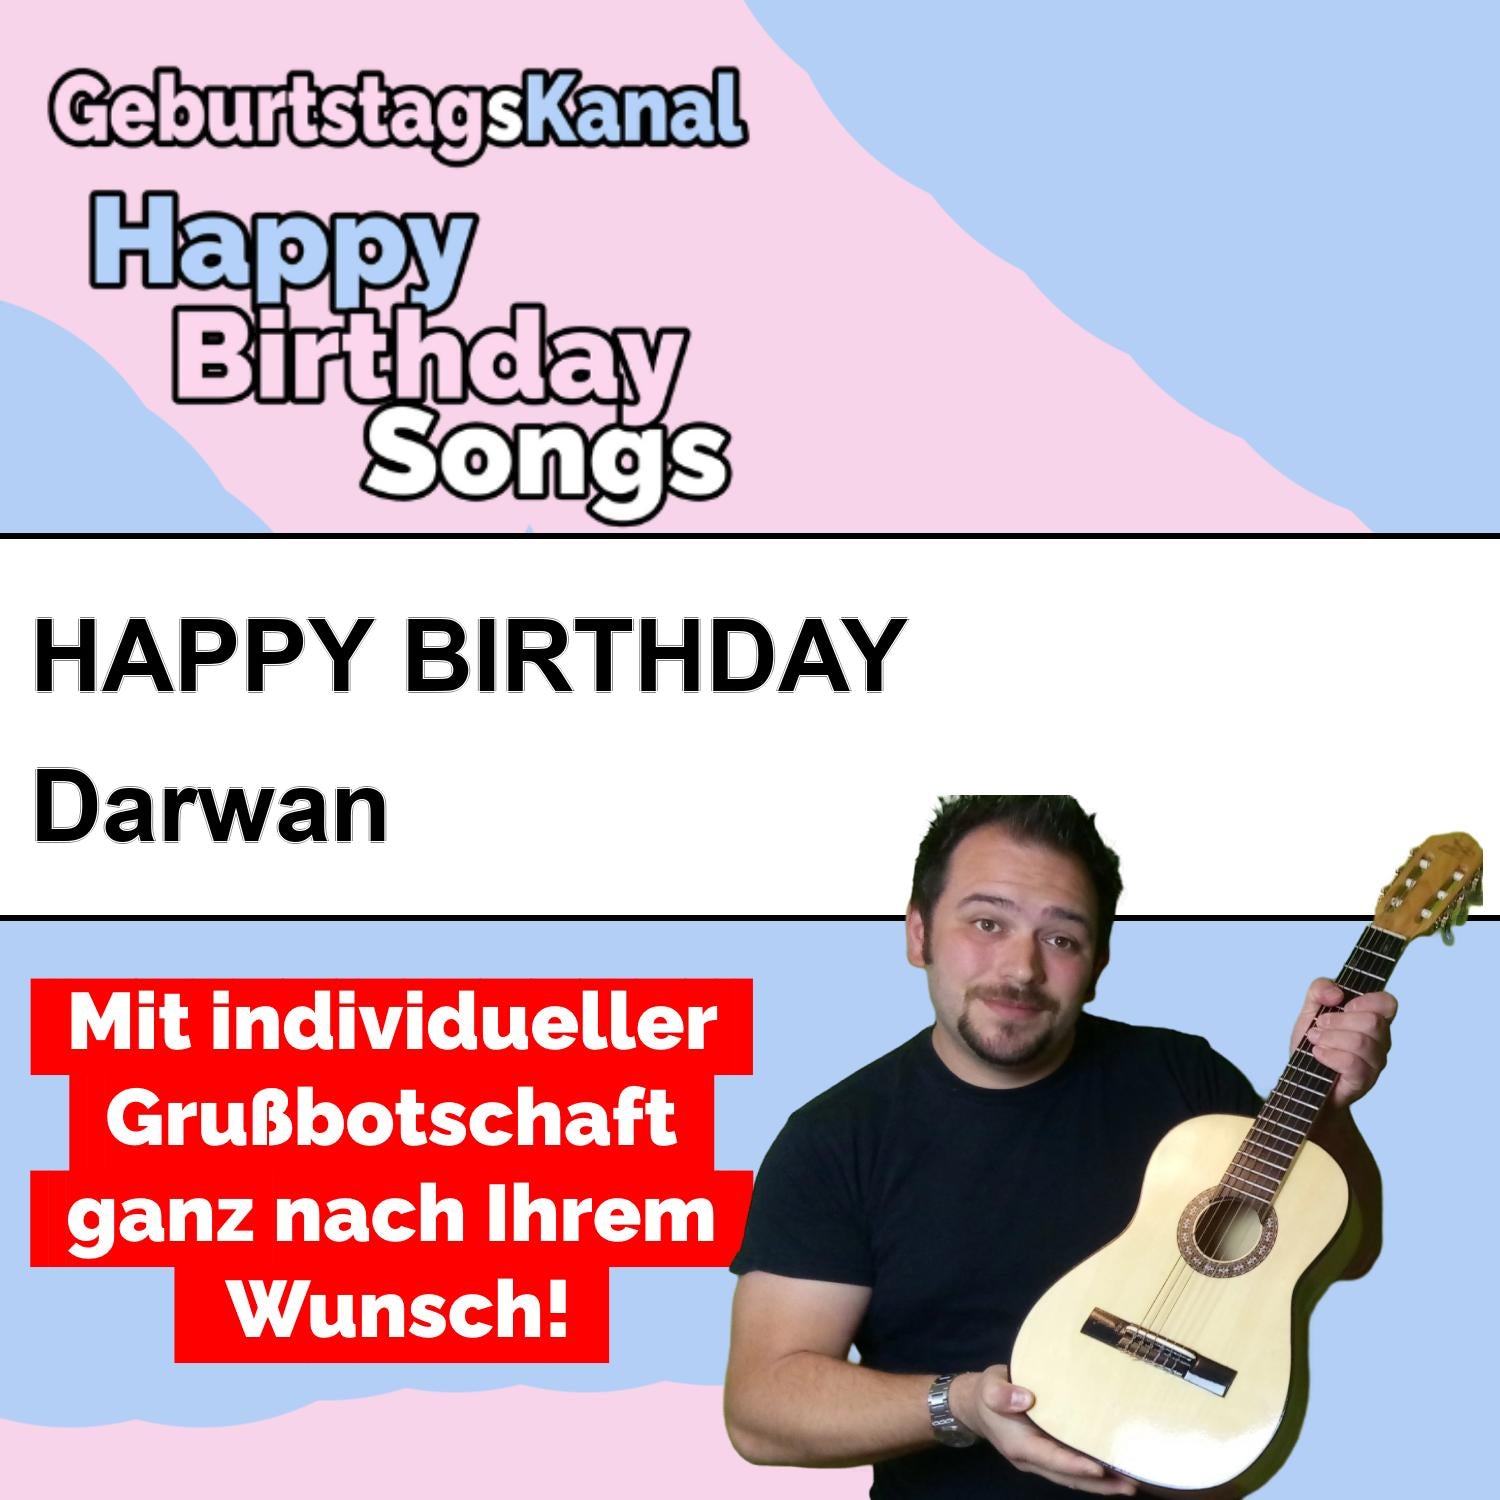 Produktbild Happy Birthday to you Darwan mit Wunschgrußbotschaft